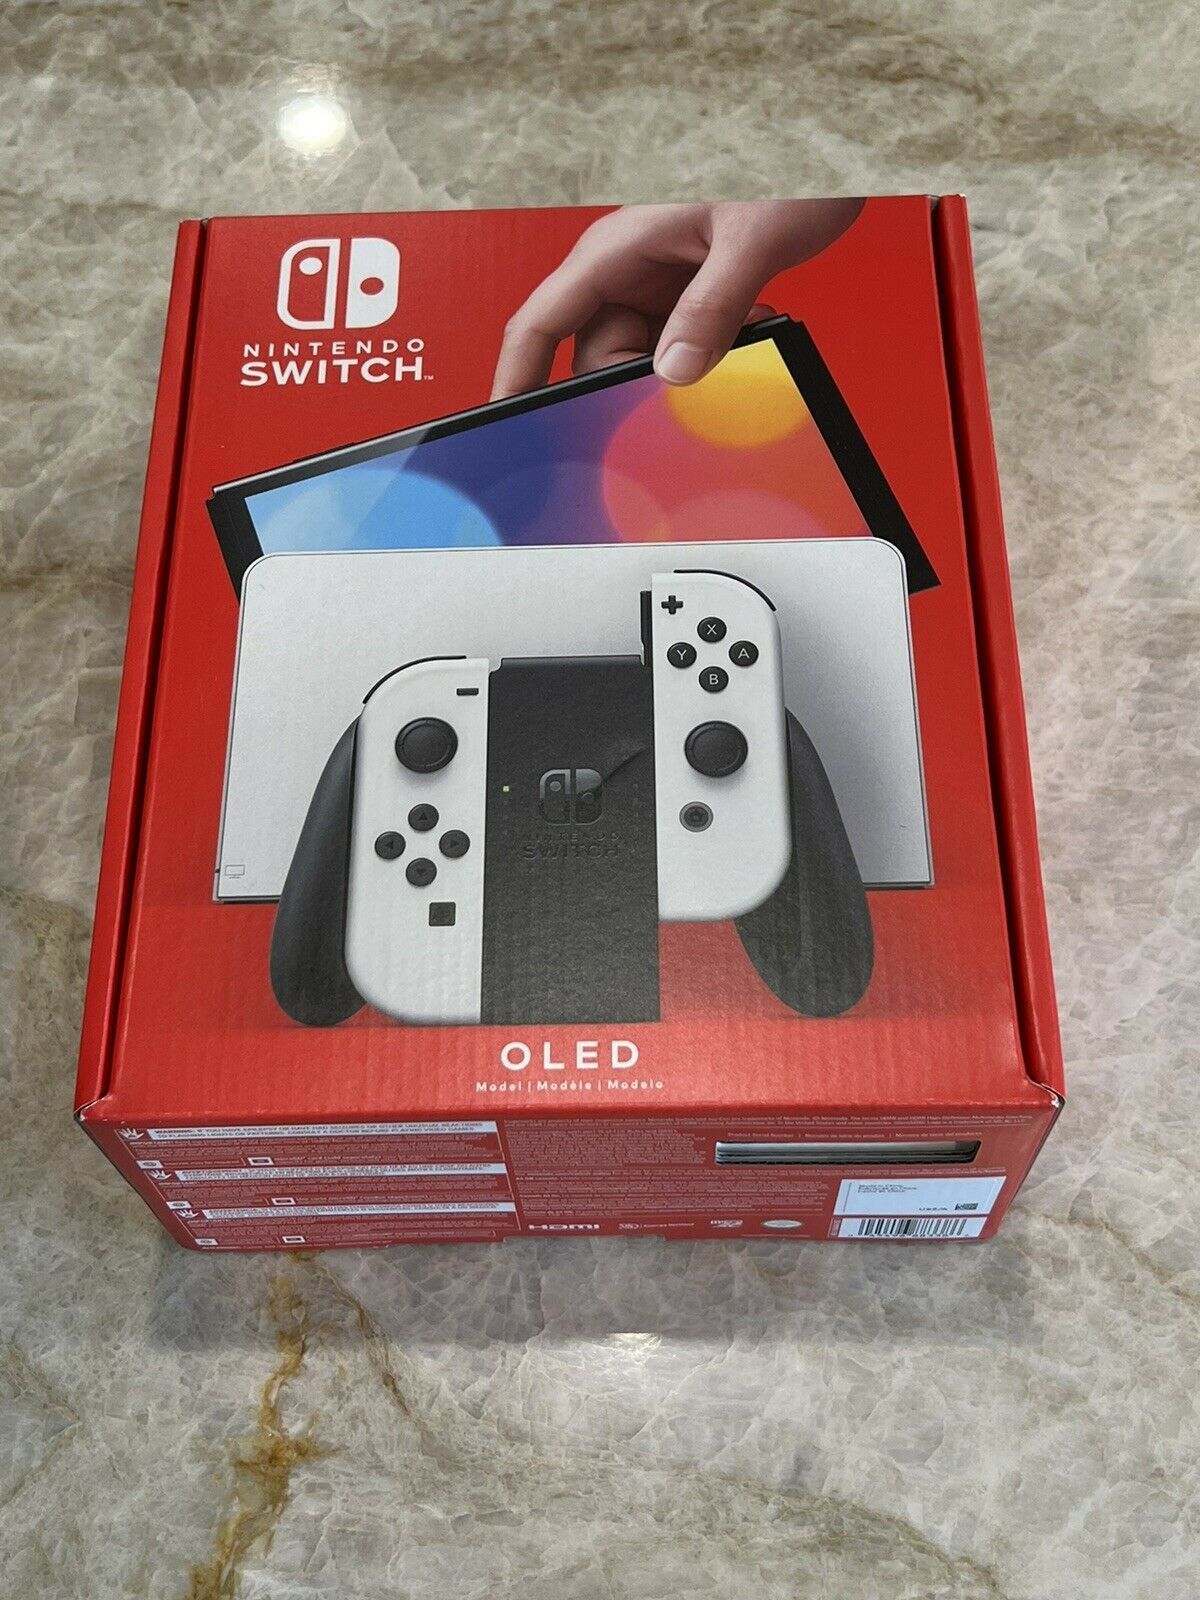 Nintendo Switch OLED White - New, Sealed